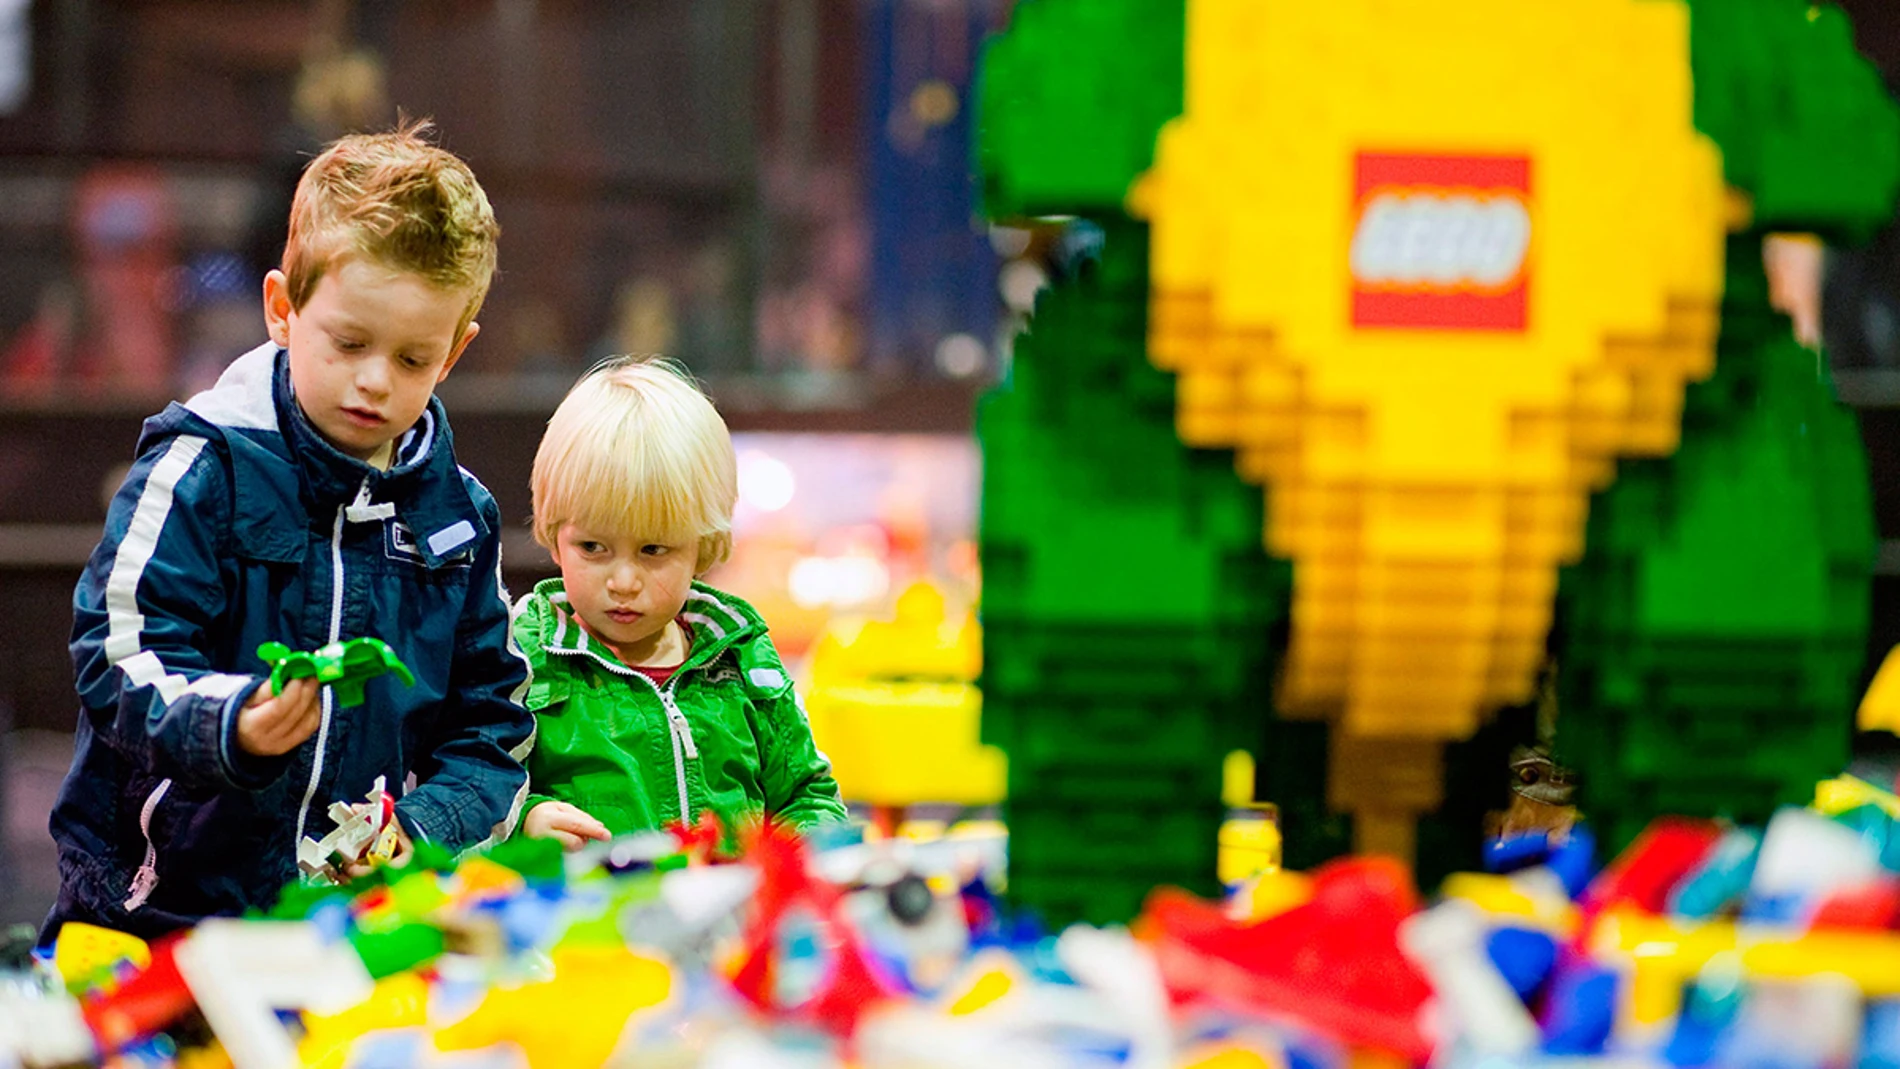 Niños jugando con Lego